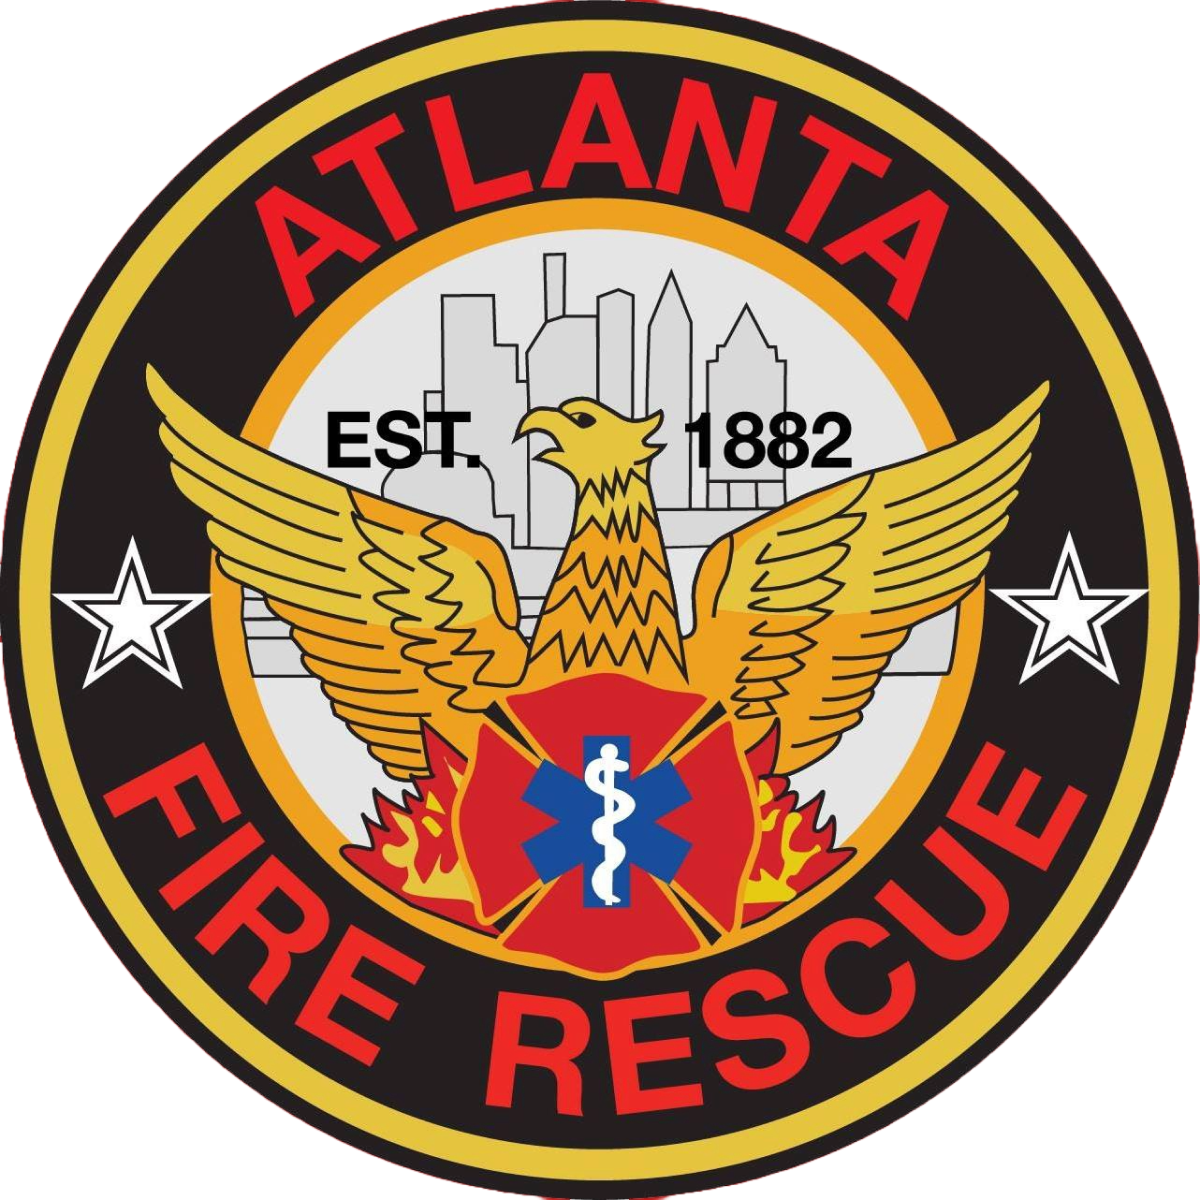 Atlanta Fire Rescue